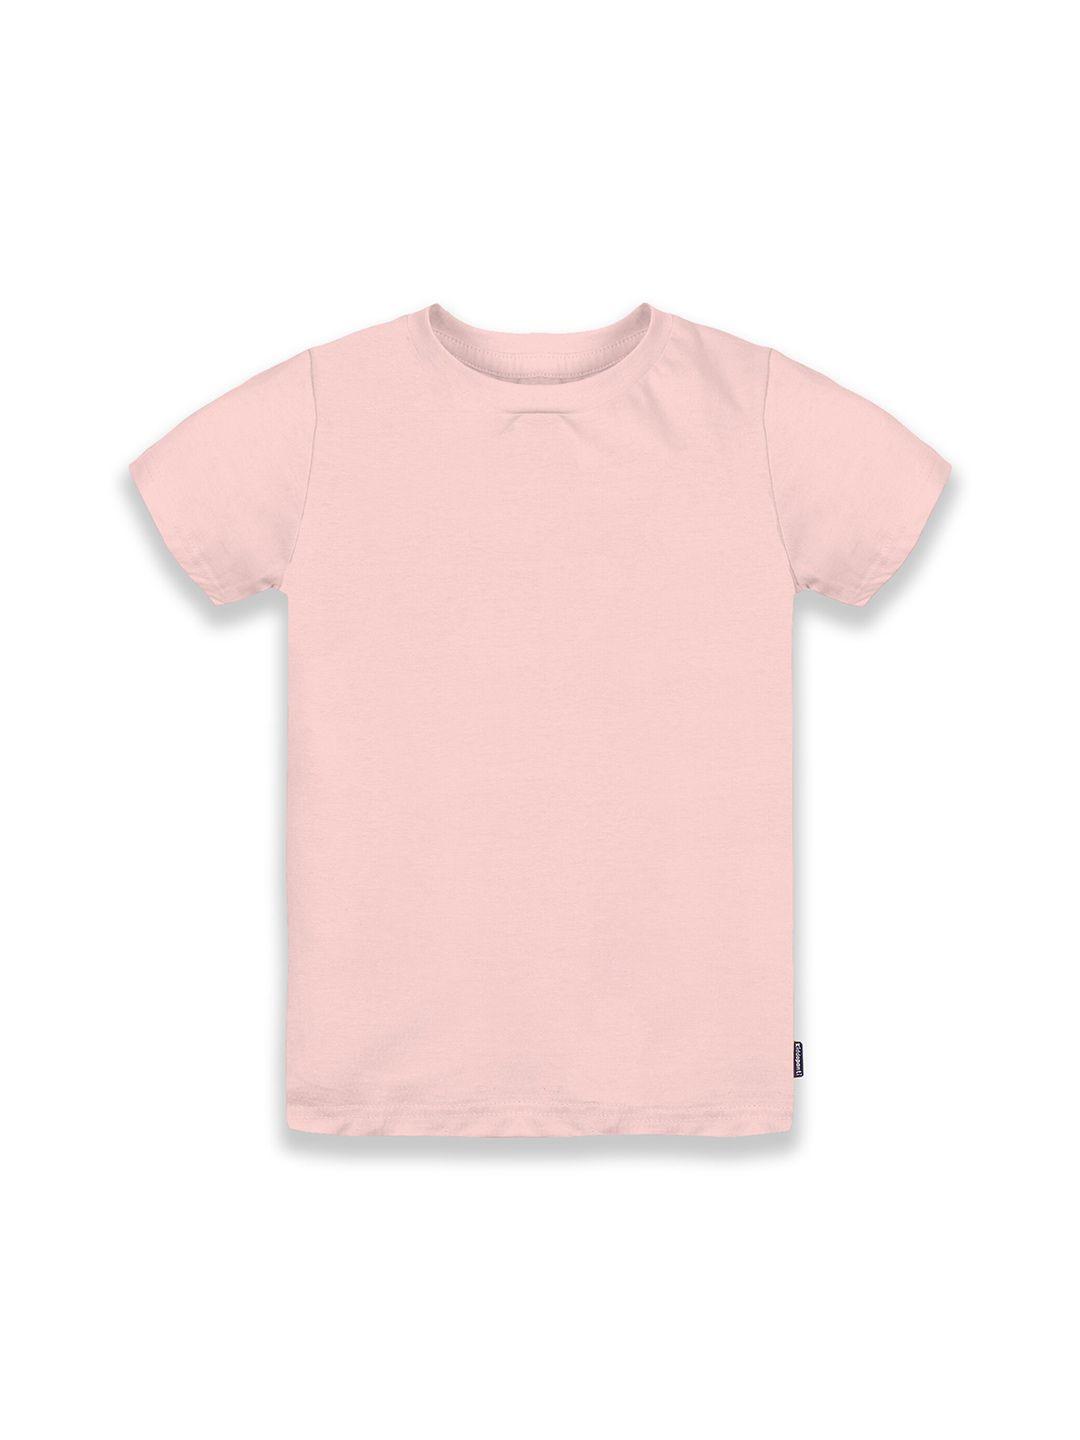 kiddopanti boy solid pink pure cotton t-shirt